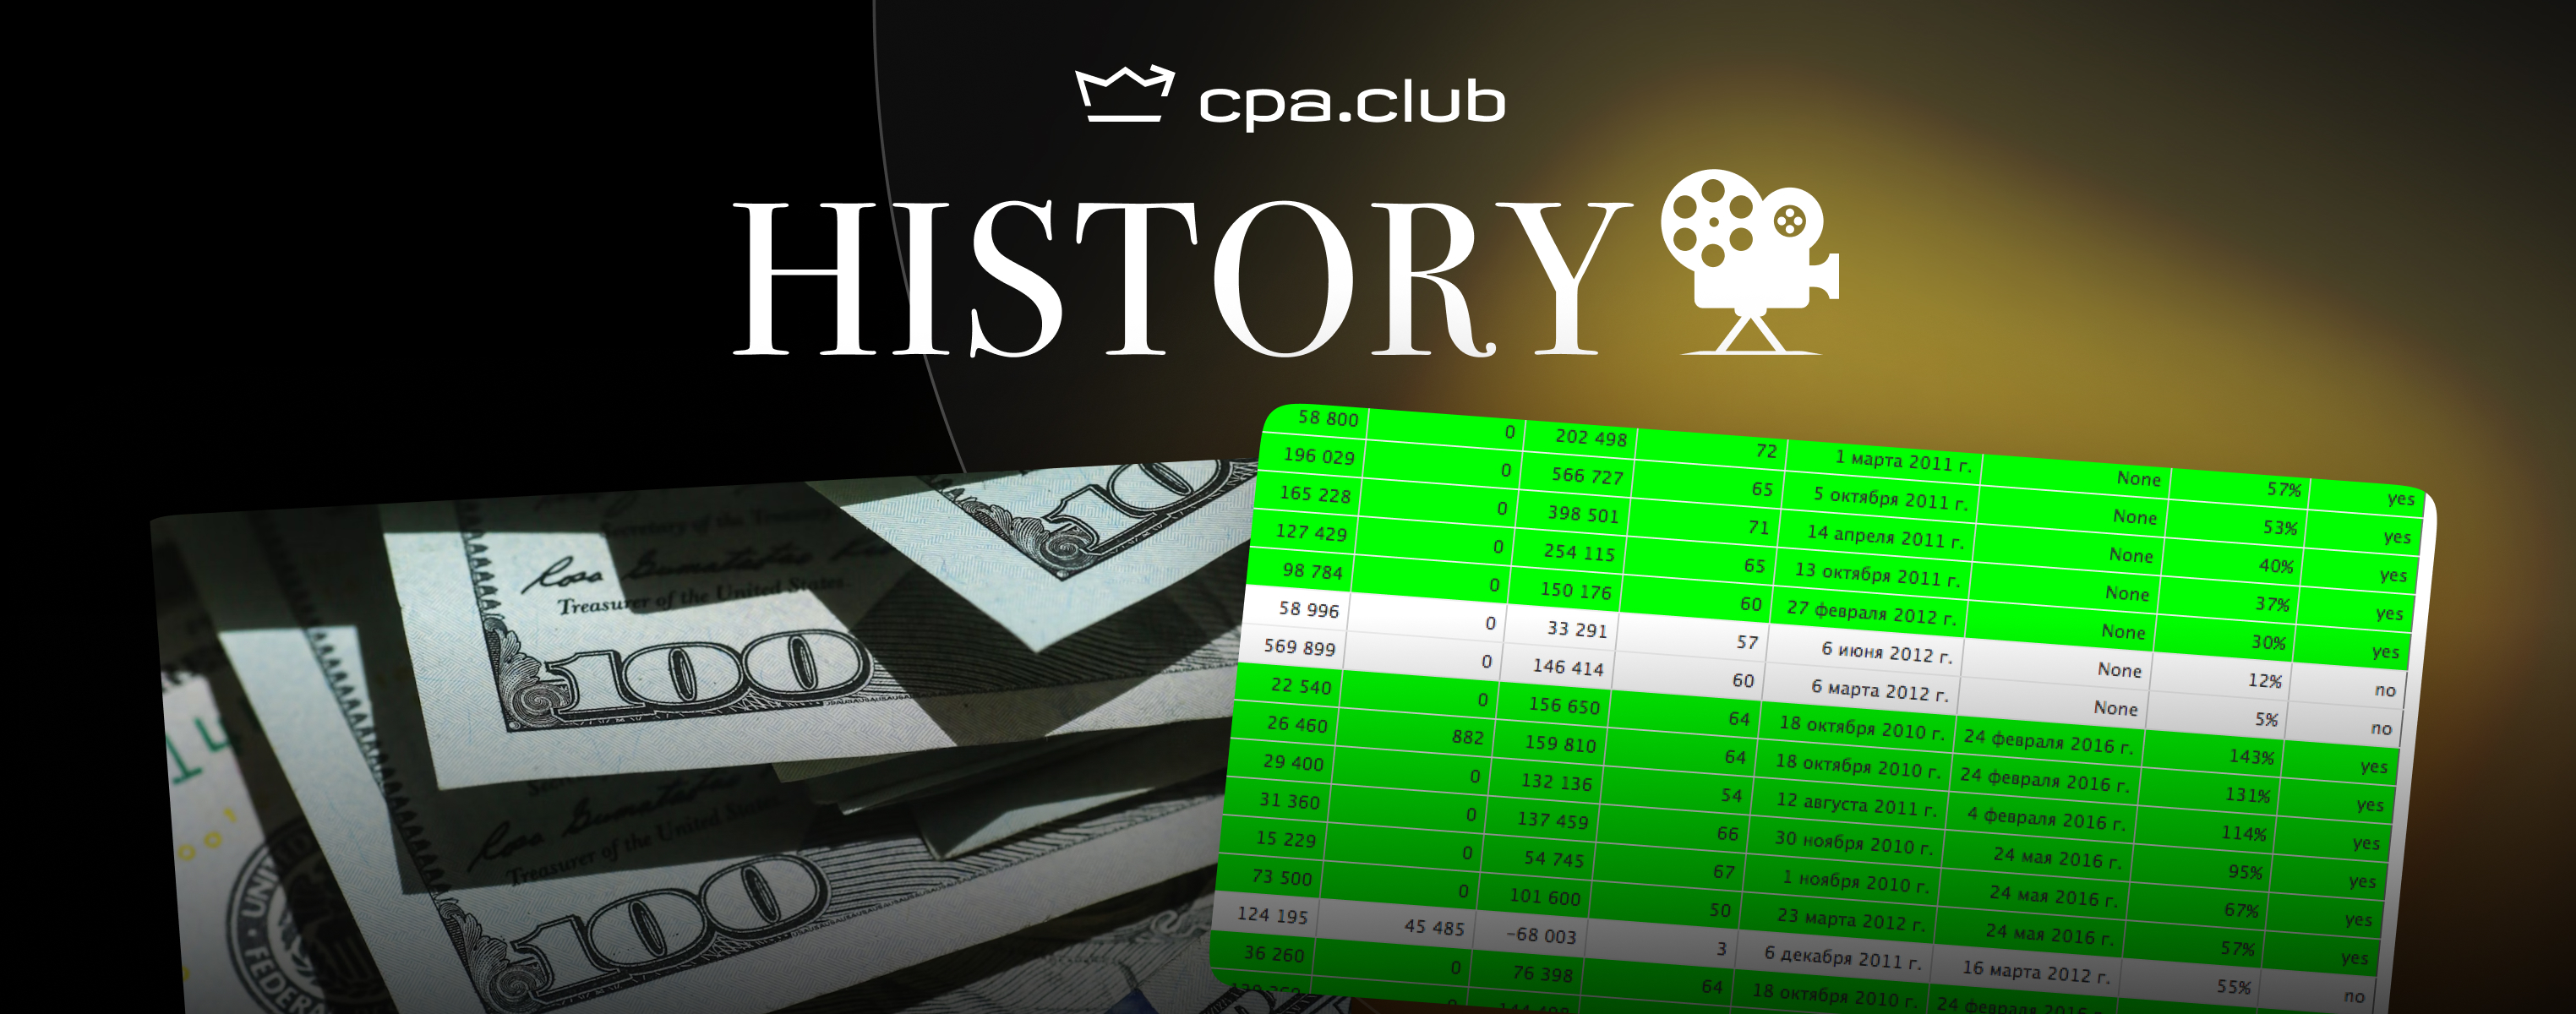 Cpa.Club History. Ретрокейс. Пассивный доход с сайтов: миф или реальность?